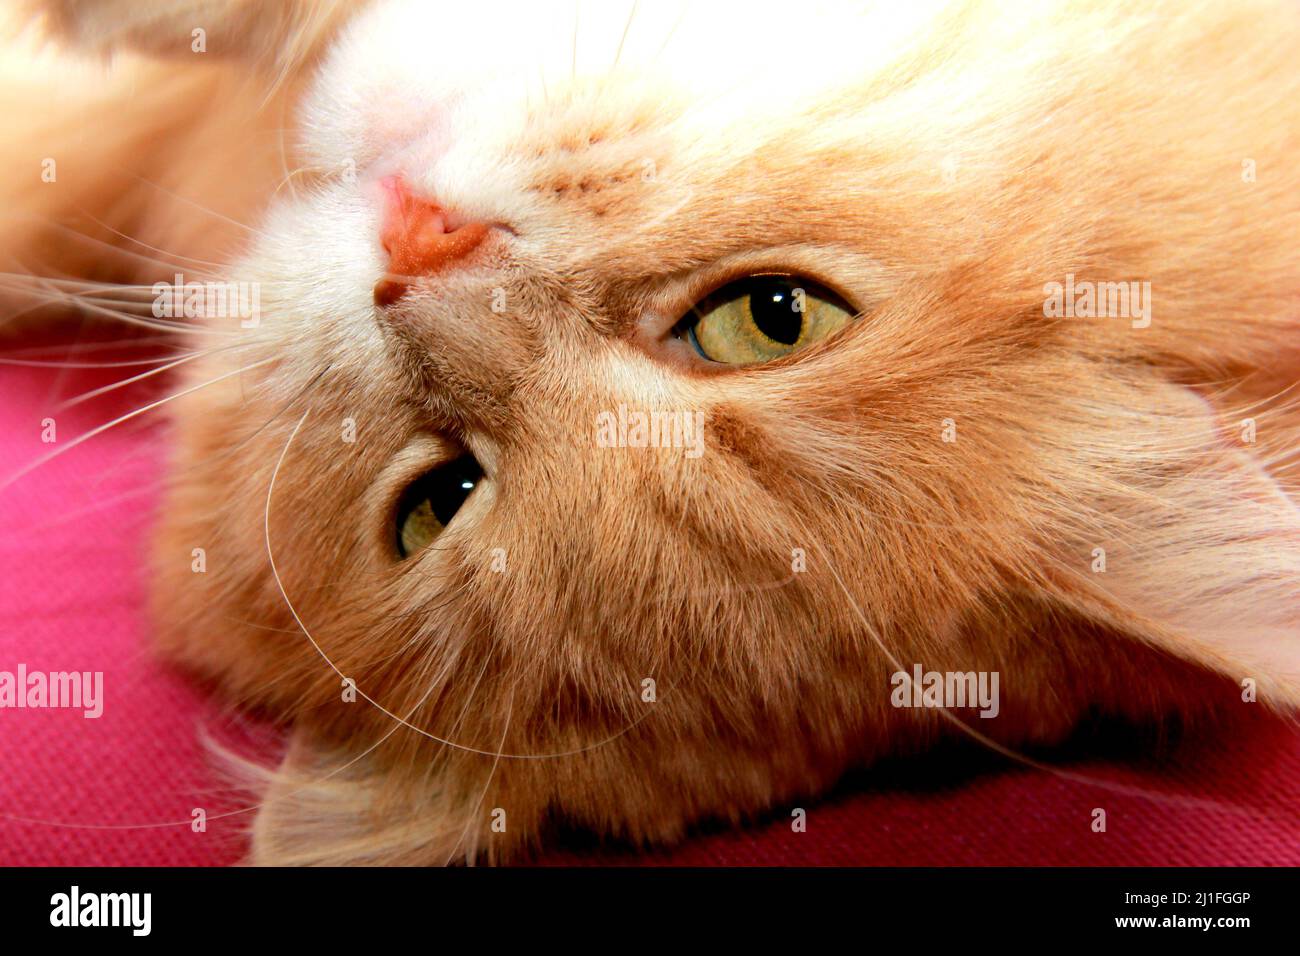 Verängstigte und überraschte rote Katze mit großem Schwanz sieht mit weiten Augen aus. Hauskatze liegt auf dicker warmer Decke, Nahaufnahme. Stockfoto